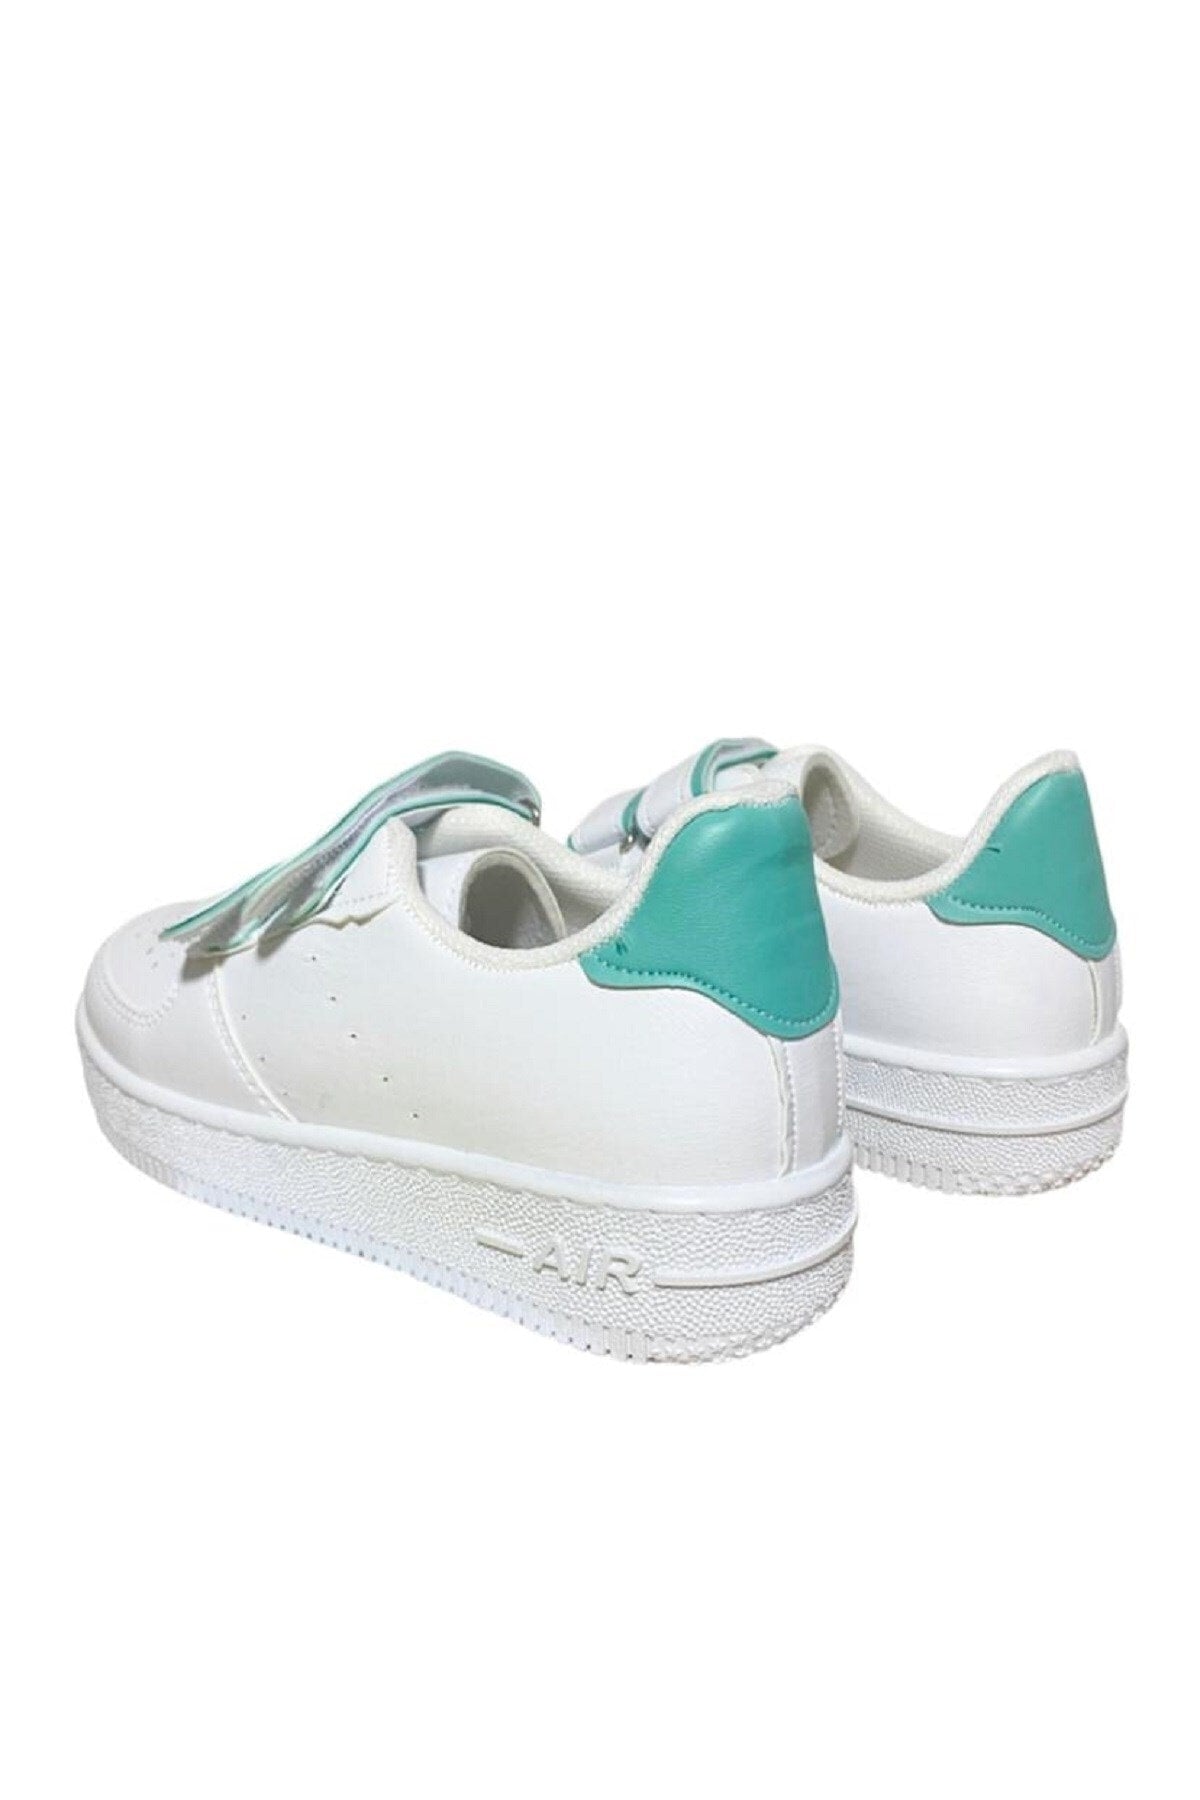 Unisex - Girls - Boys Velcro Sneakers Snekaer - White